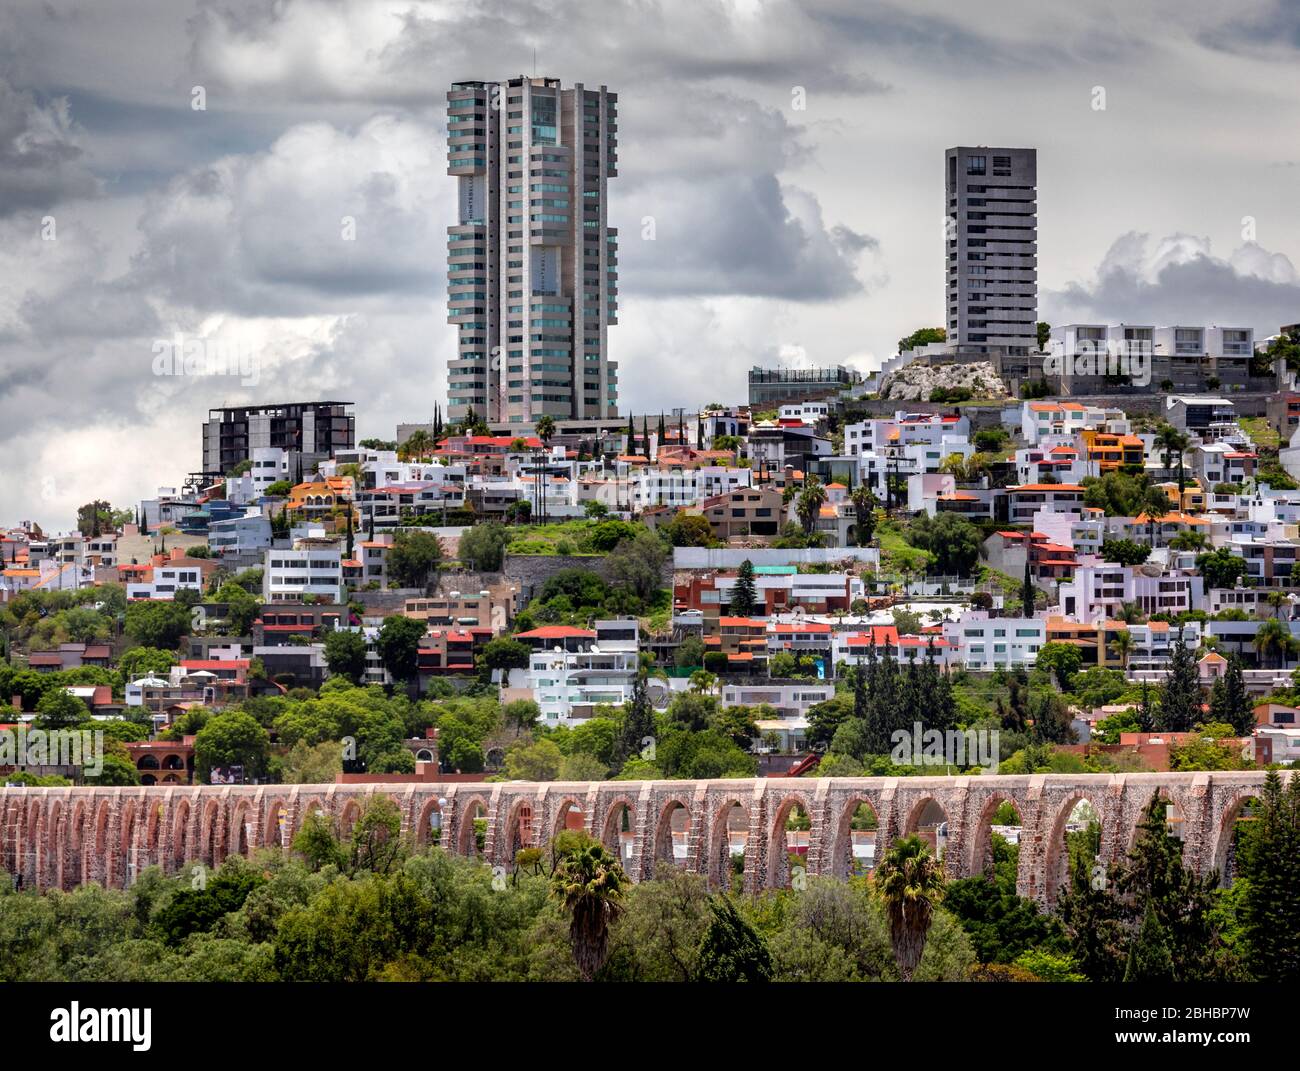 Il vecchio e il nuovo si combinano a Queretaro, Messico, come alti edifici di appartamenti salgono vicino all'acquedotto coloniale. Foto Stock